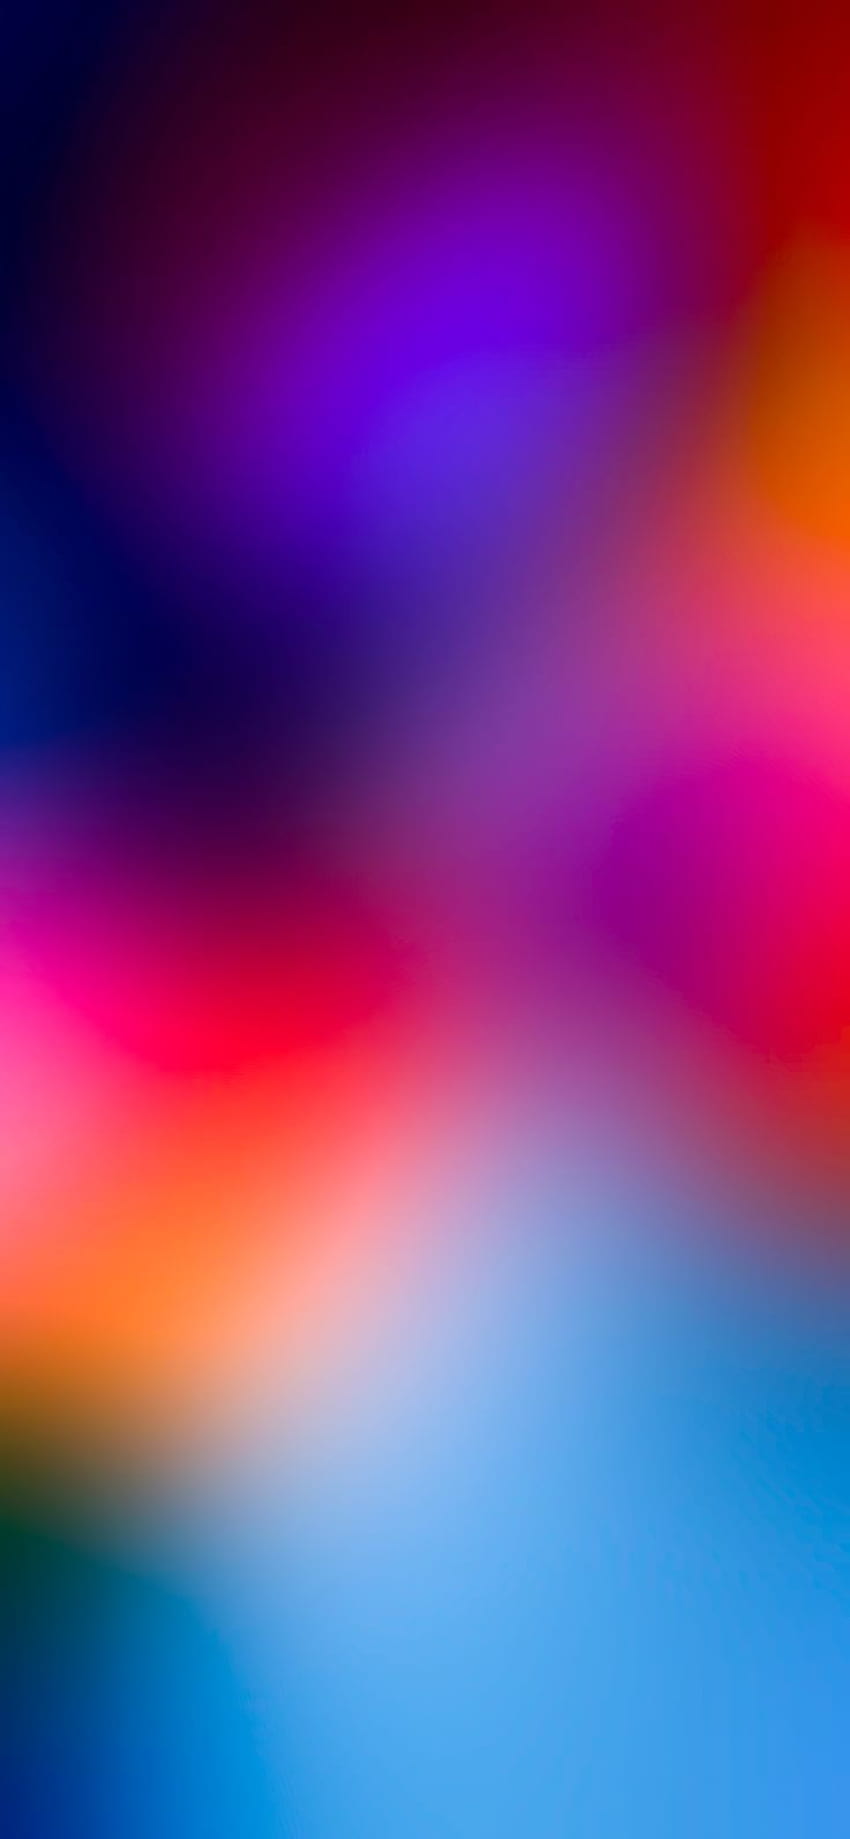 WALLKLM on Gradient, best gradient iphone HD phone wallpaper | Pxfuel